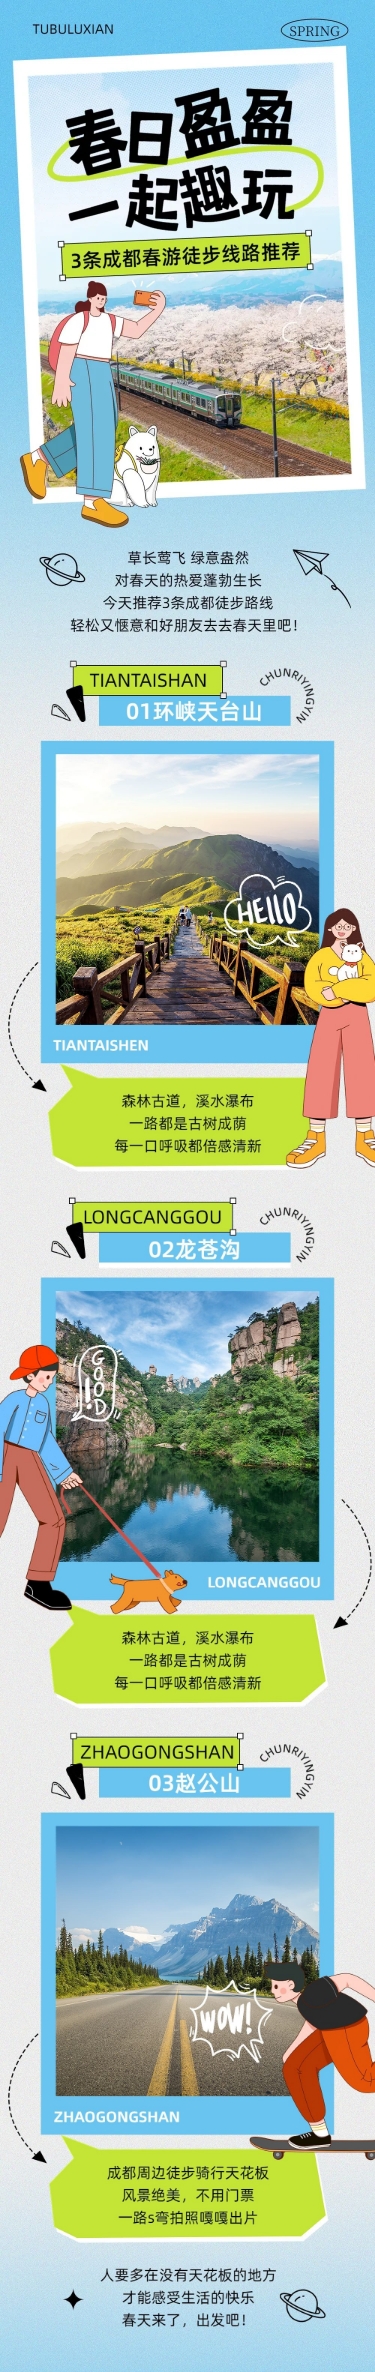 清爽风春游旅游路线宣传微信公众号文章长图